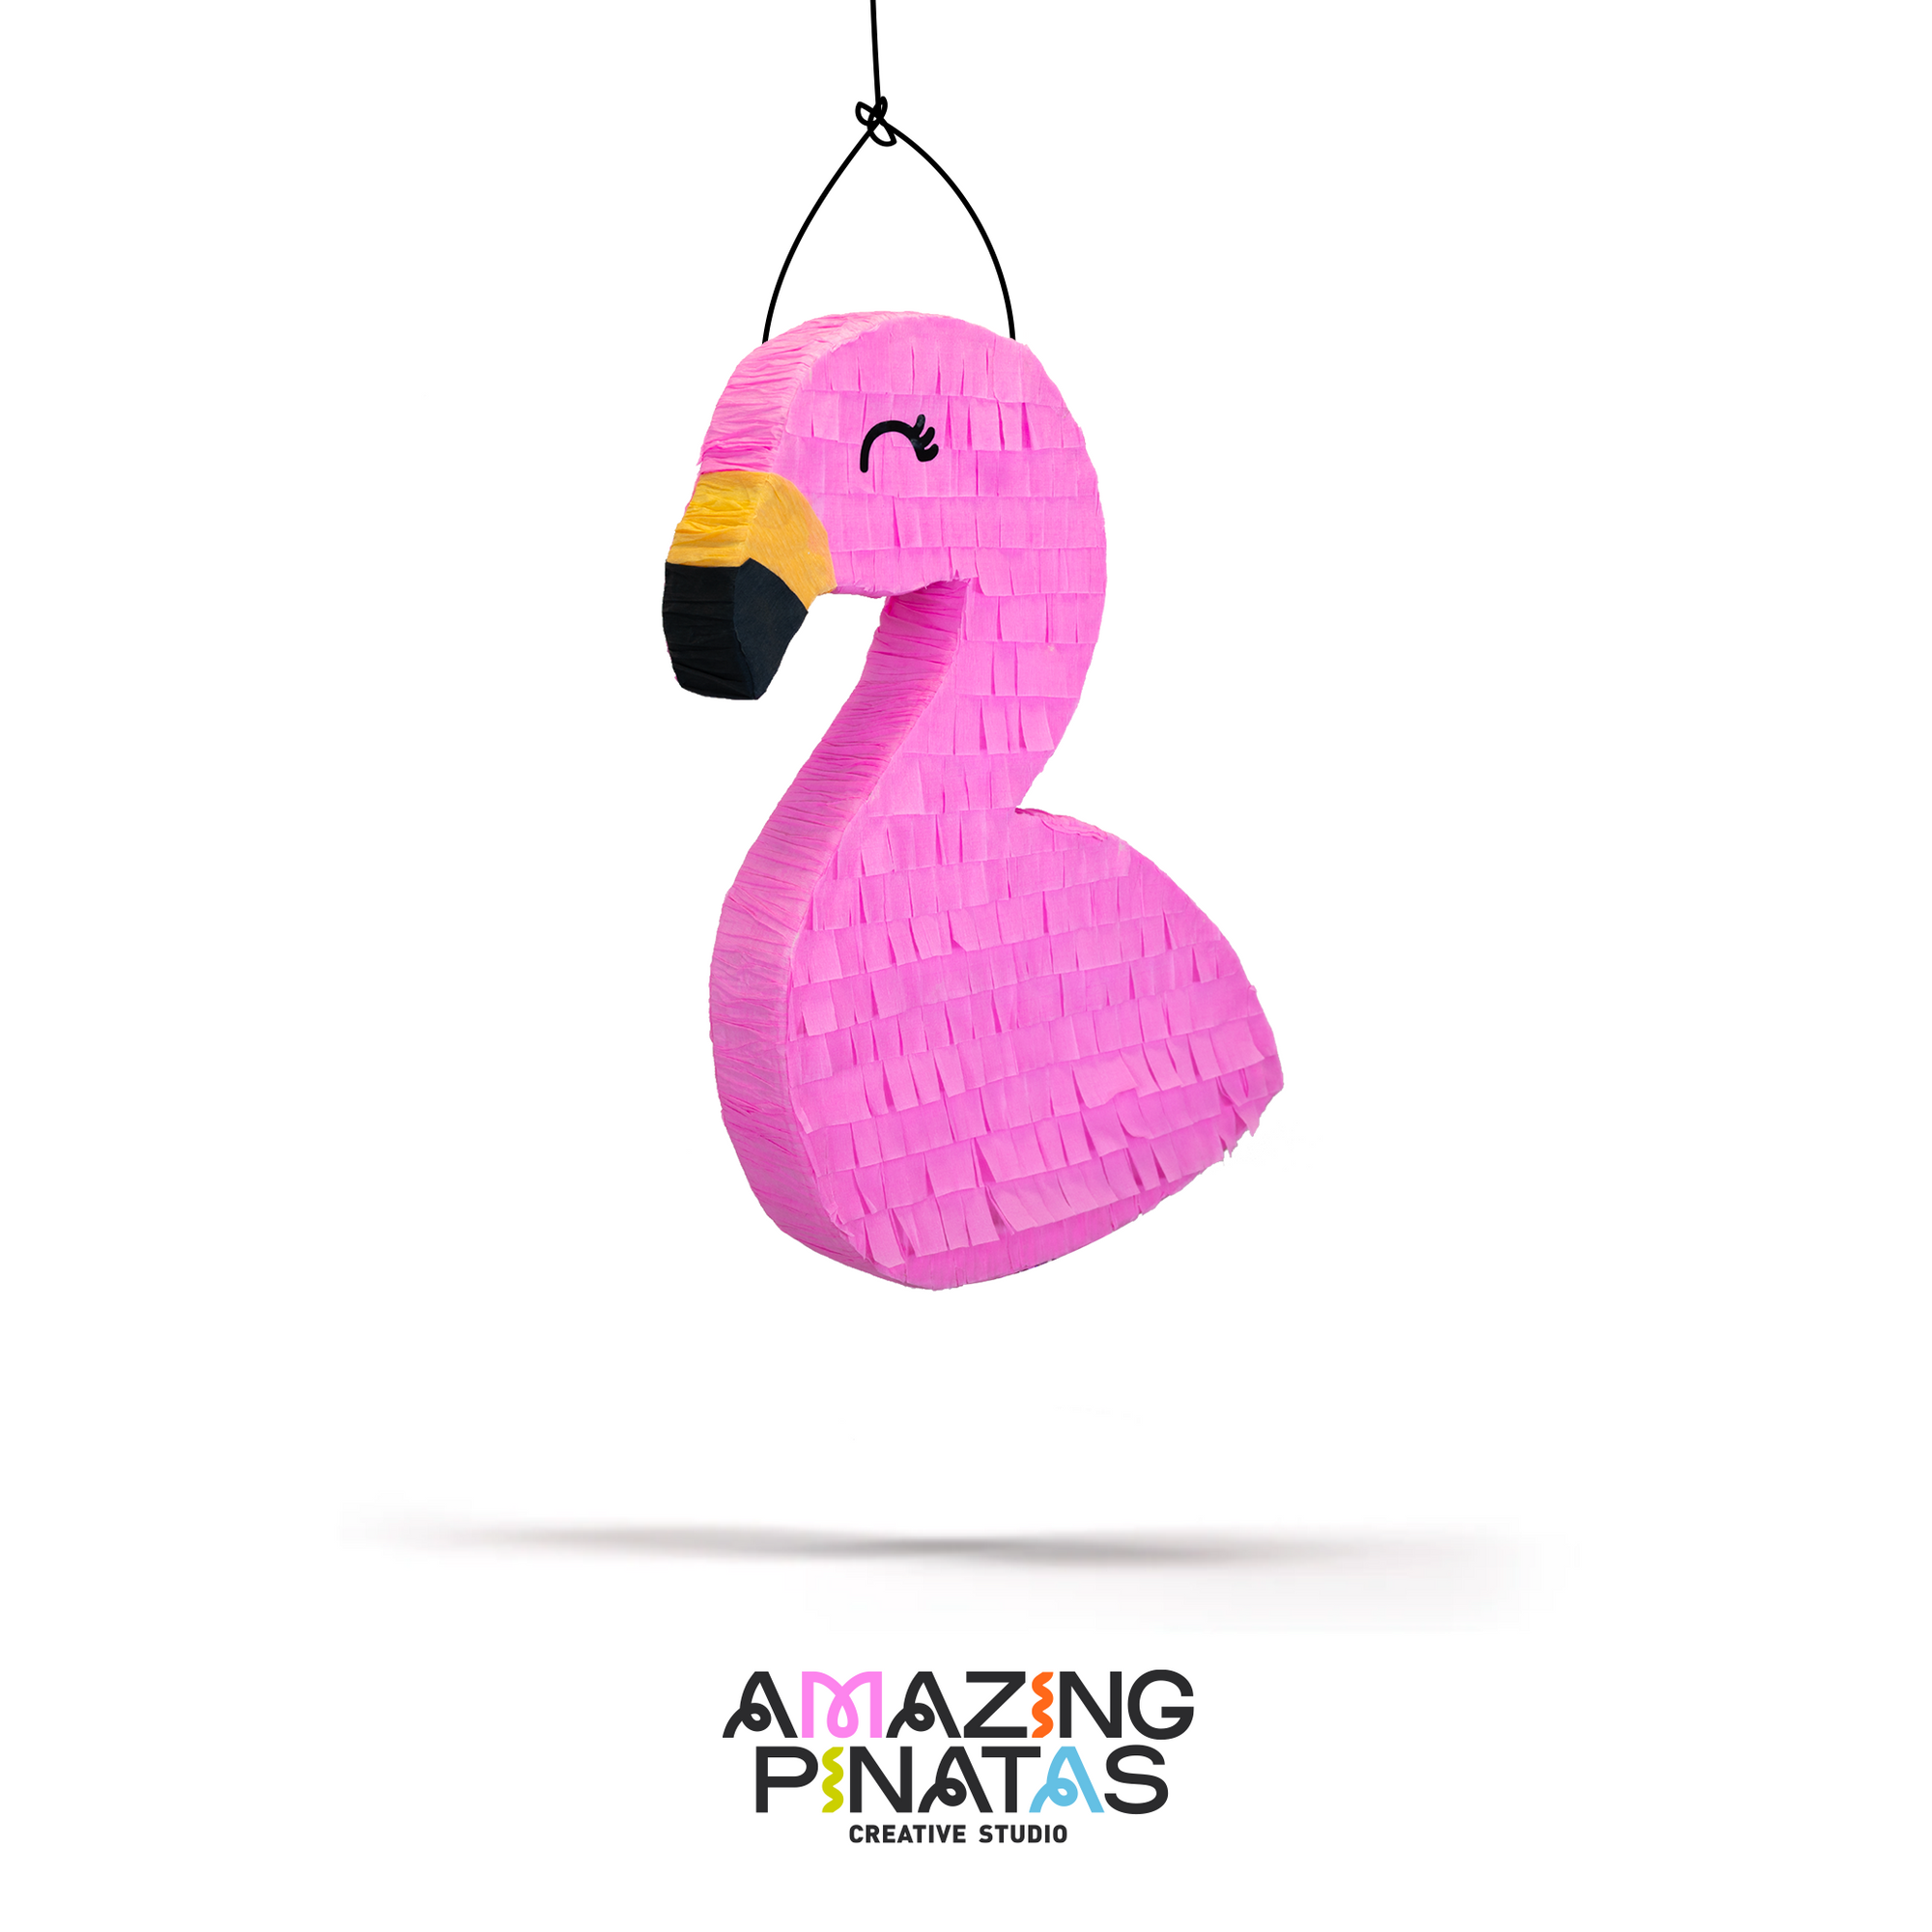 Flamingo Pinata - Amazing Pinatas 